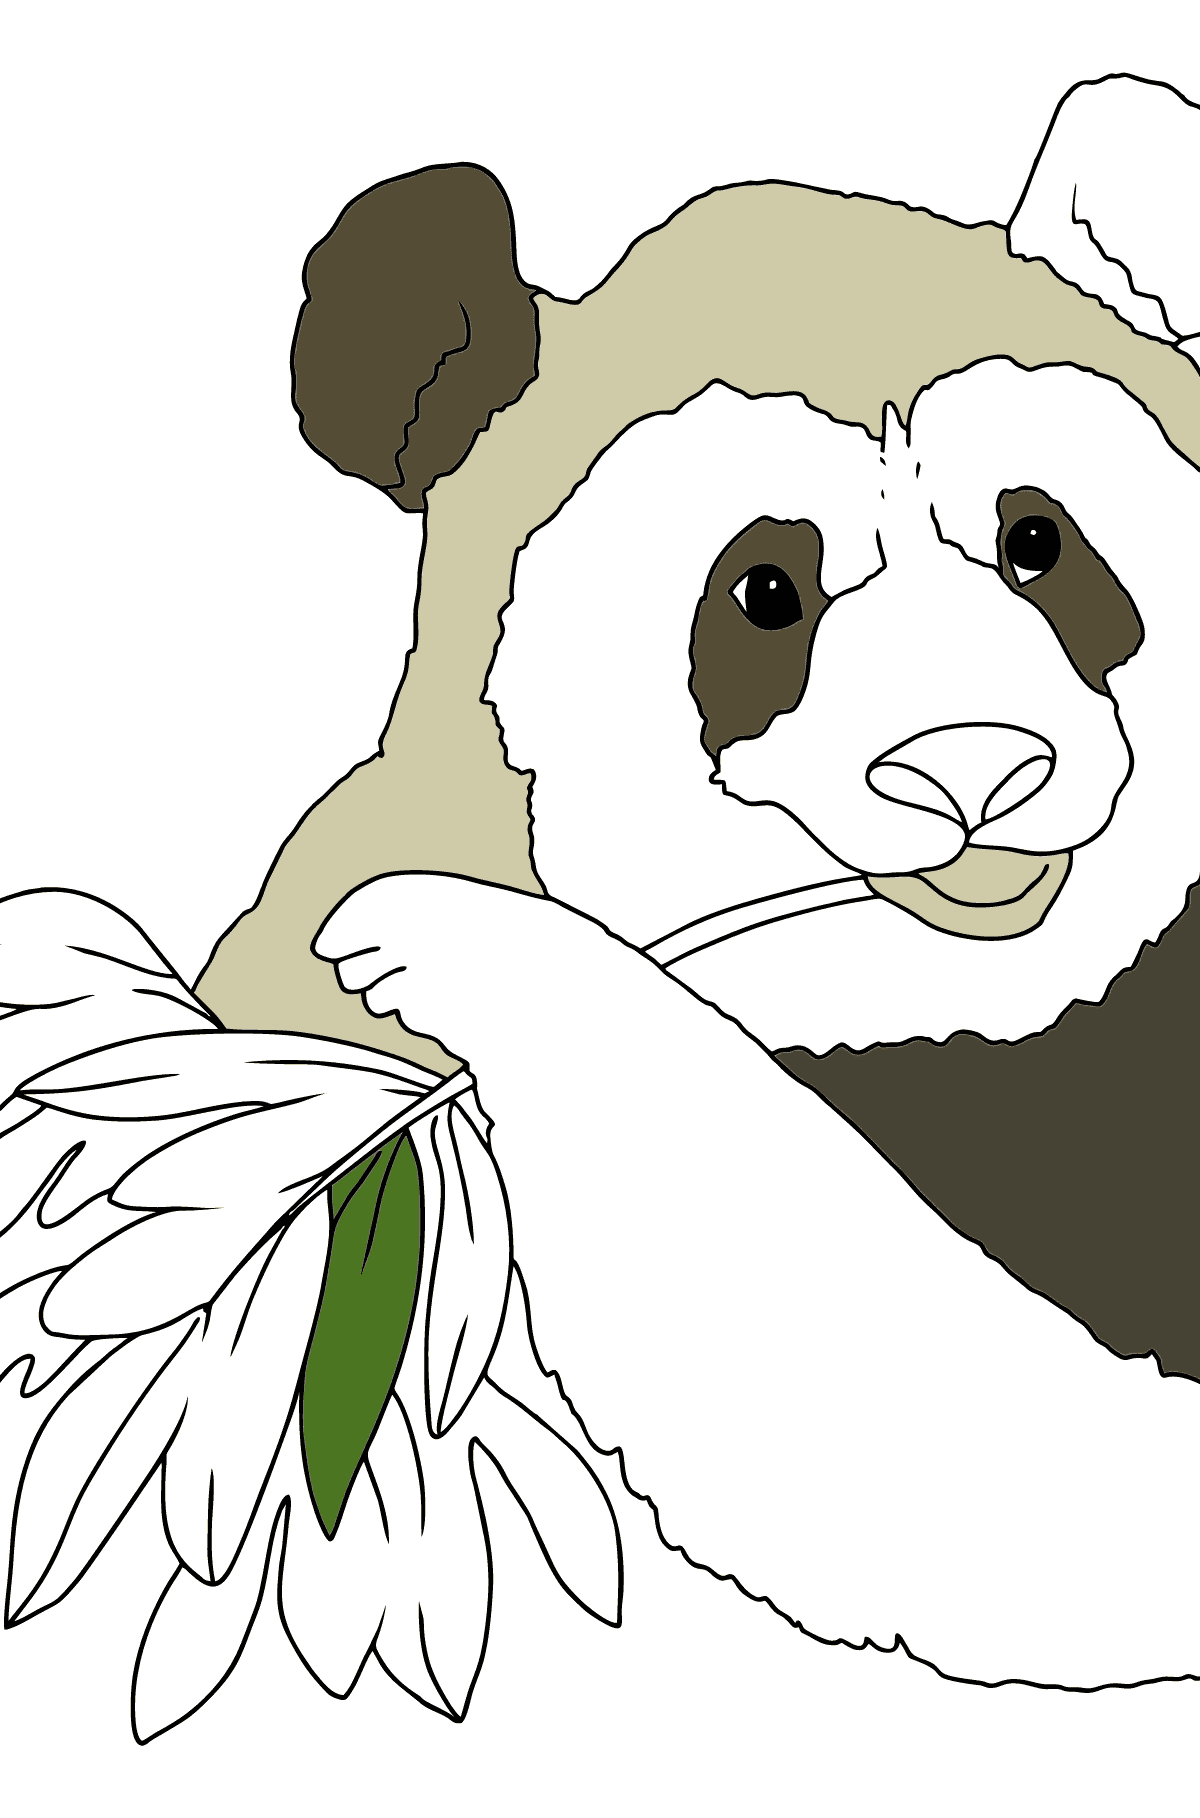 Malvorlagen - Ein Panda frisst Bambusblätter